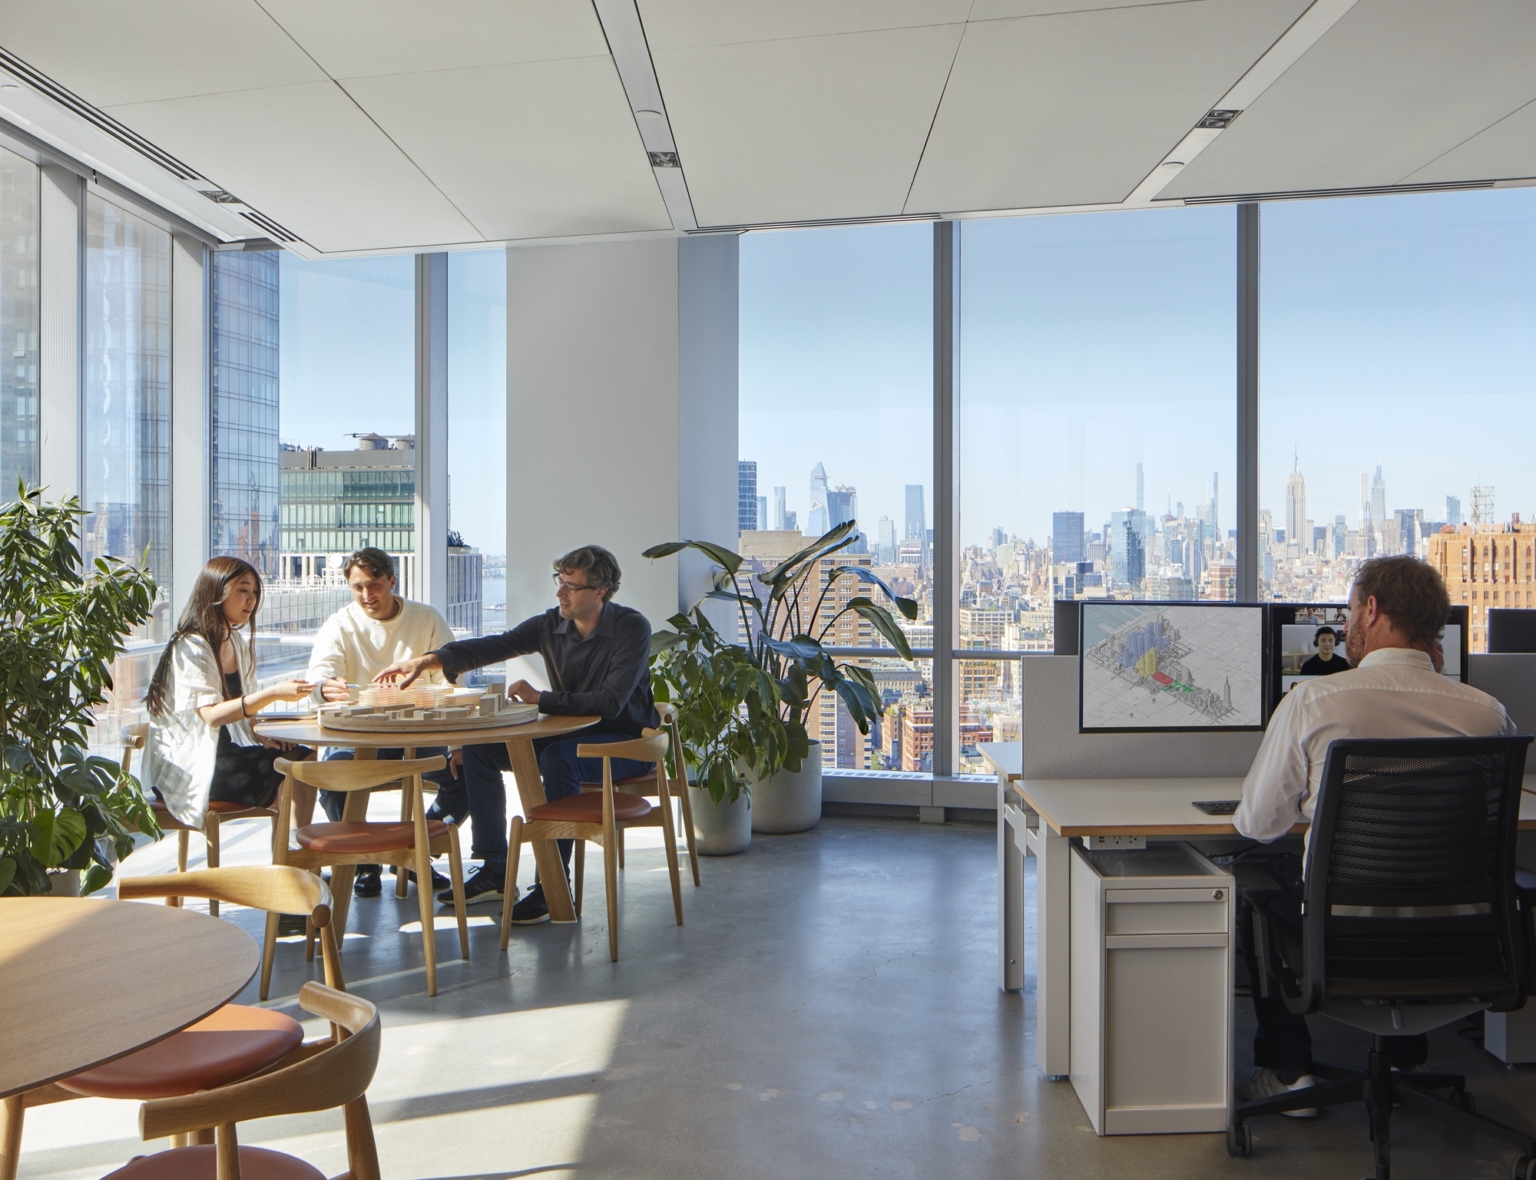 【Skidmore, Owings & Merrillのオフィスデザイン】- ニューヨーク州ニューヨーク市のコミュニケーションスペース